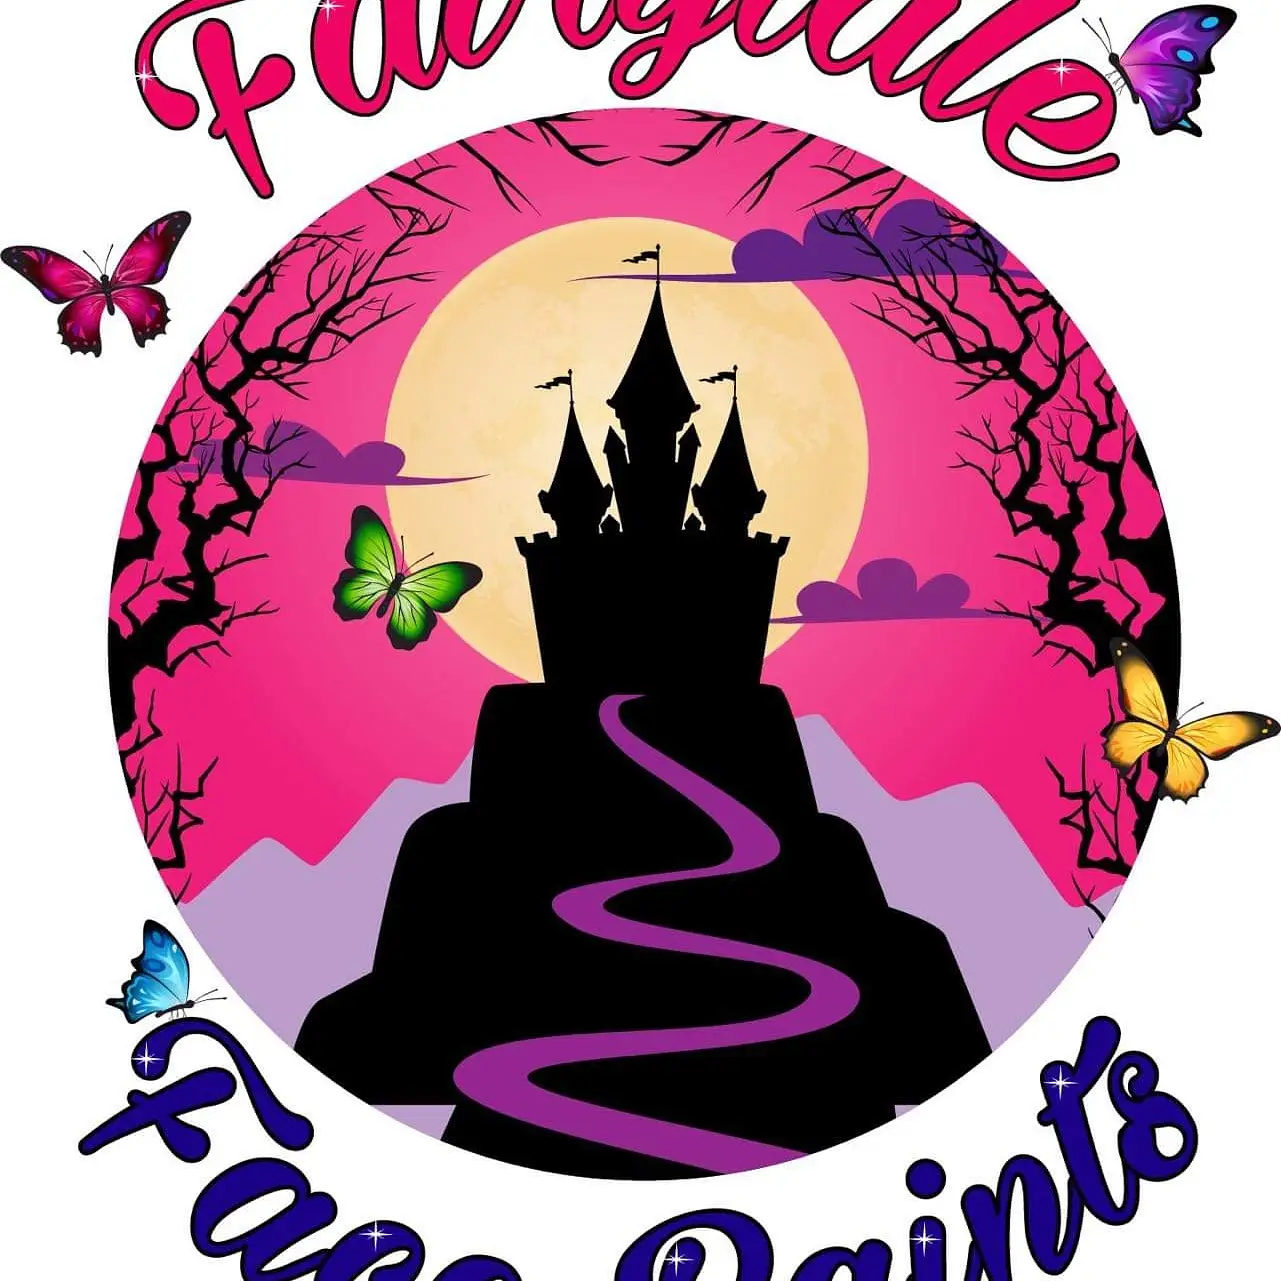 Fairytale face paints 's logo